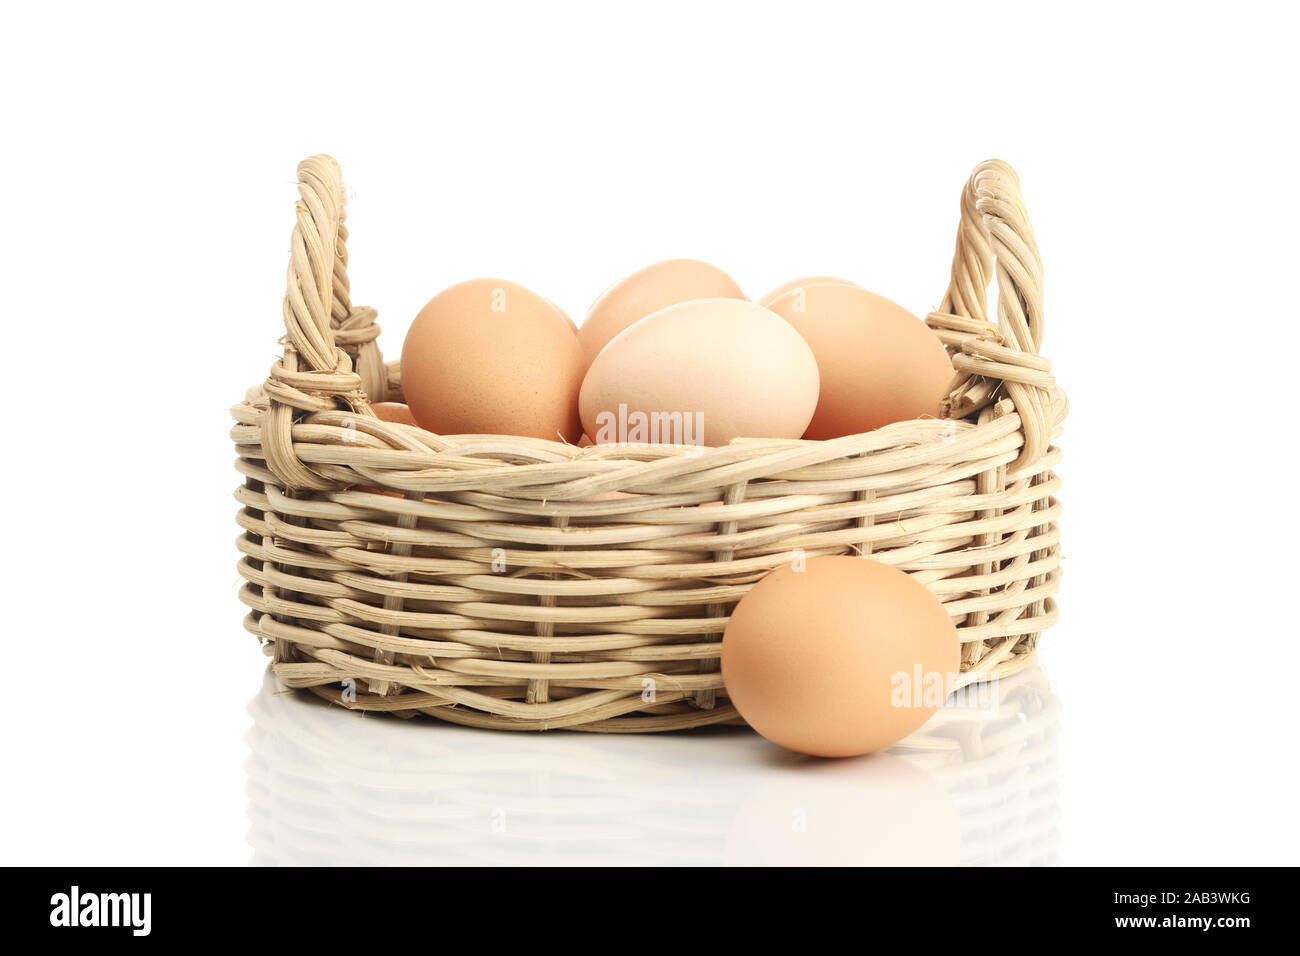 Korb mit Eier |Basket with eggs| Stock Photo